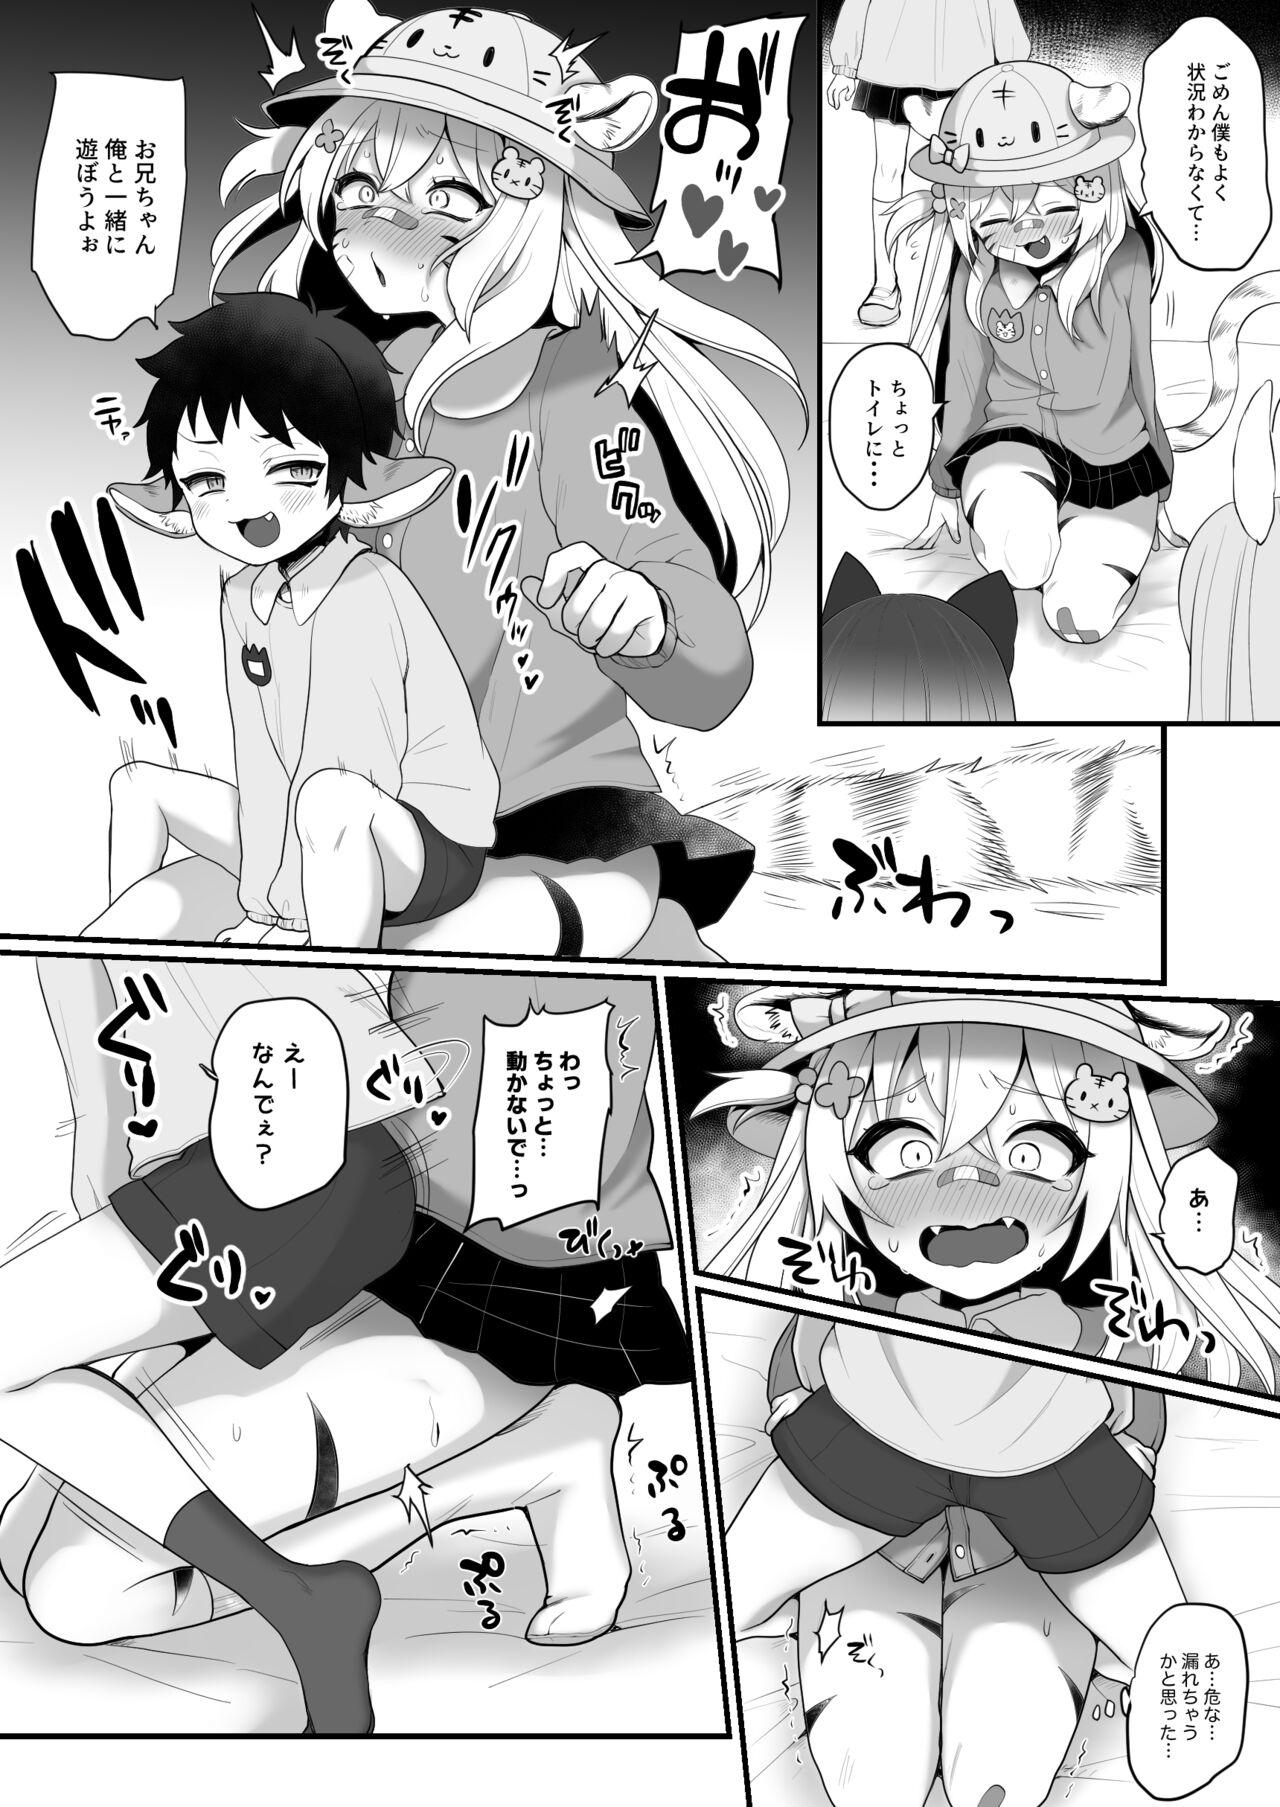 Safado Omorashi Manga Rubdown - Picture 3